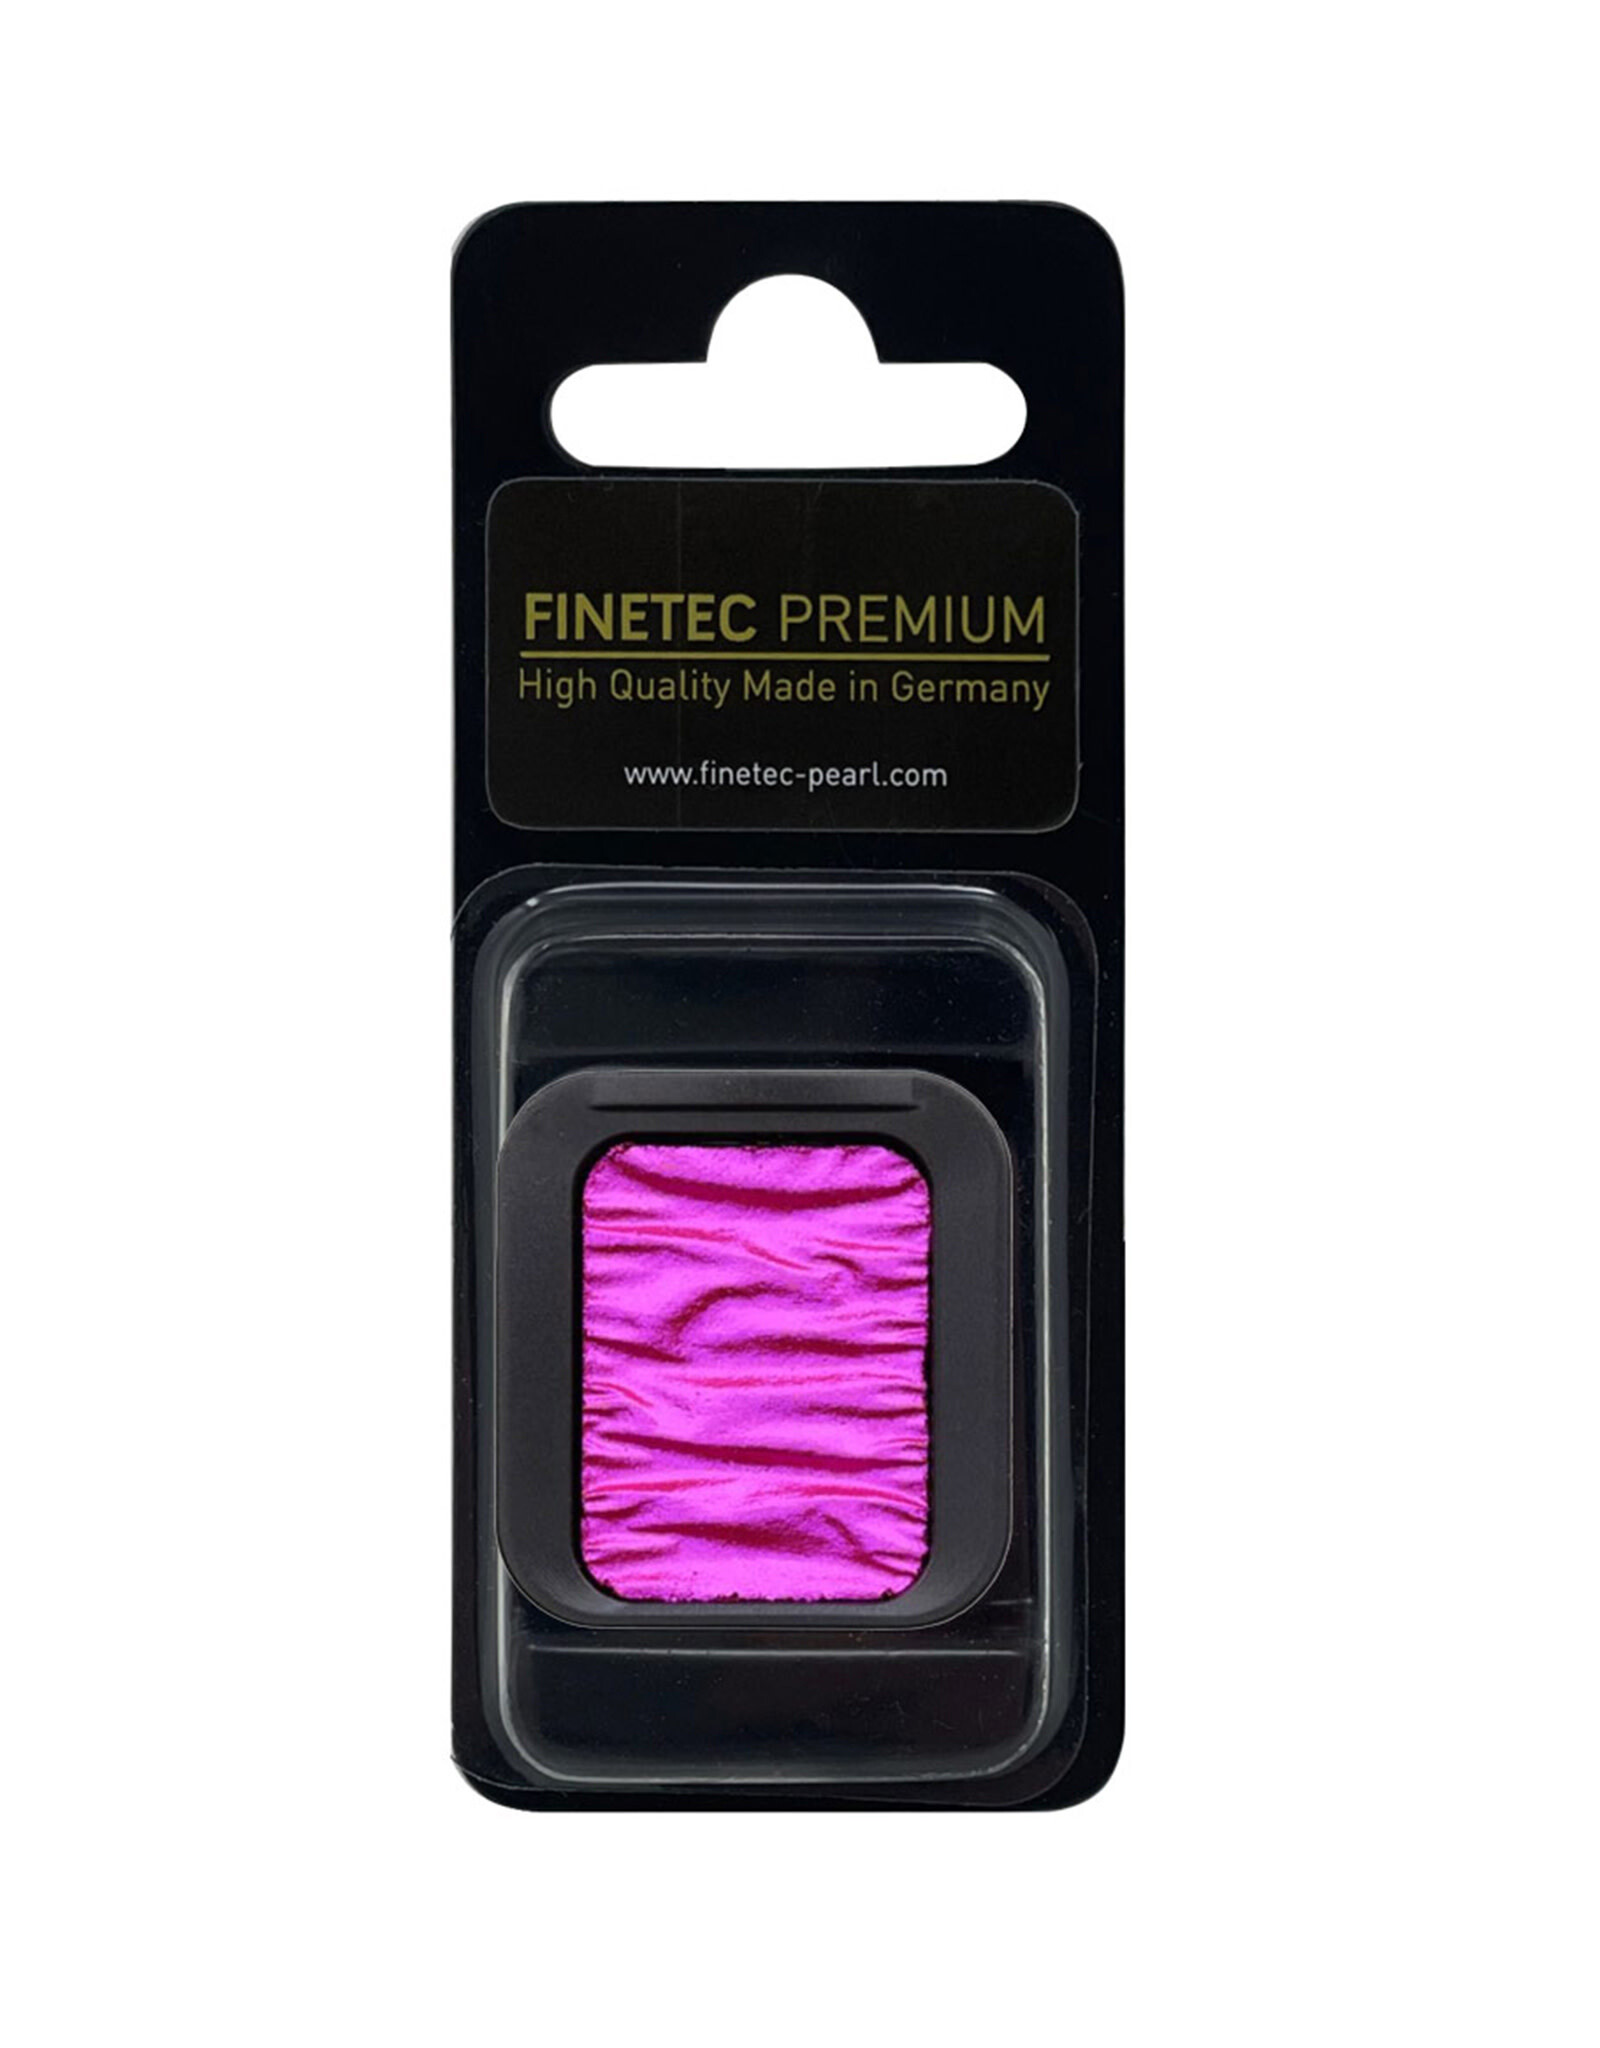 Finetec Finetec Premium Artist Watercolor Pan Refill, Phoenix Pink